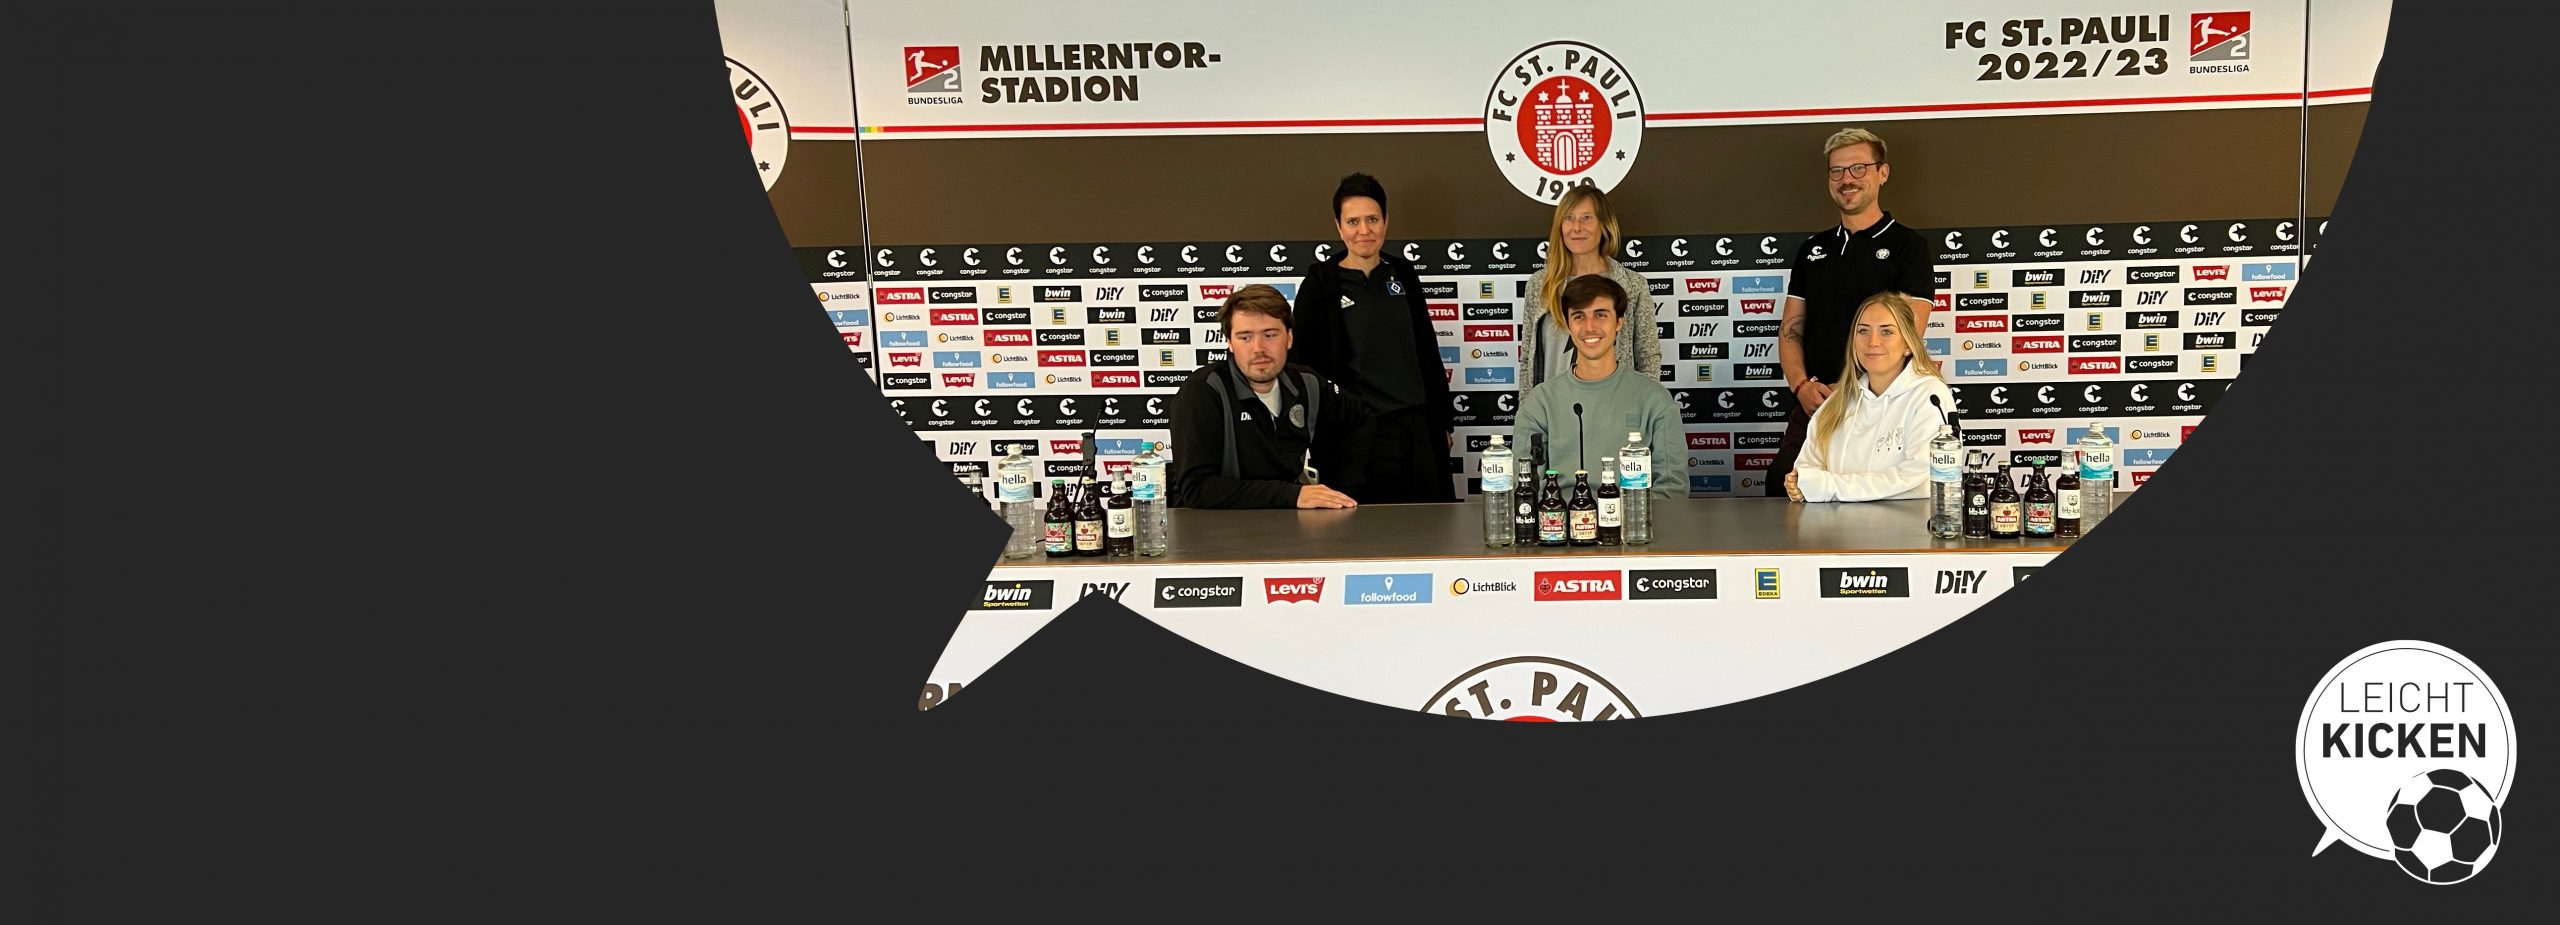 Alternativtext: Leicht Kicken-Gruppenfoto im Pressekonferenzraum des FC St. Pauli. Sechs Personen formieren sich hinter den drei Mikrofonen.